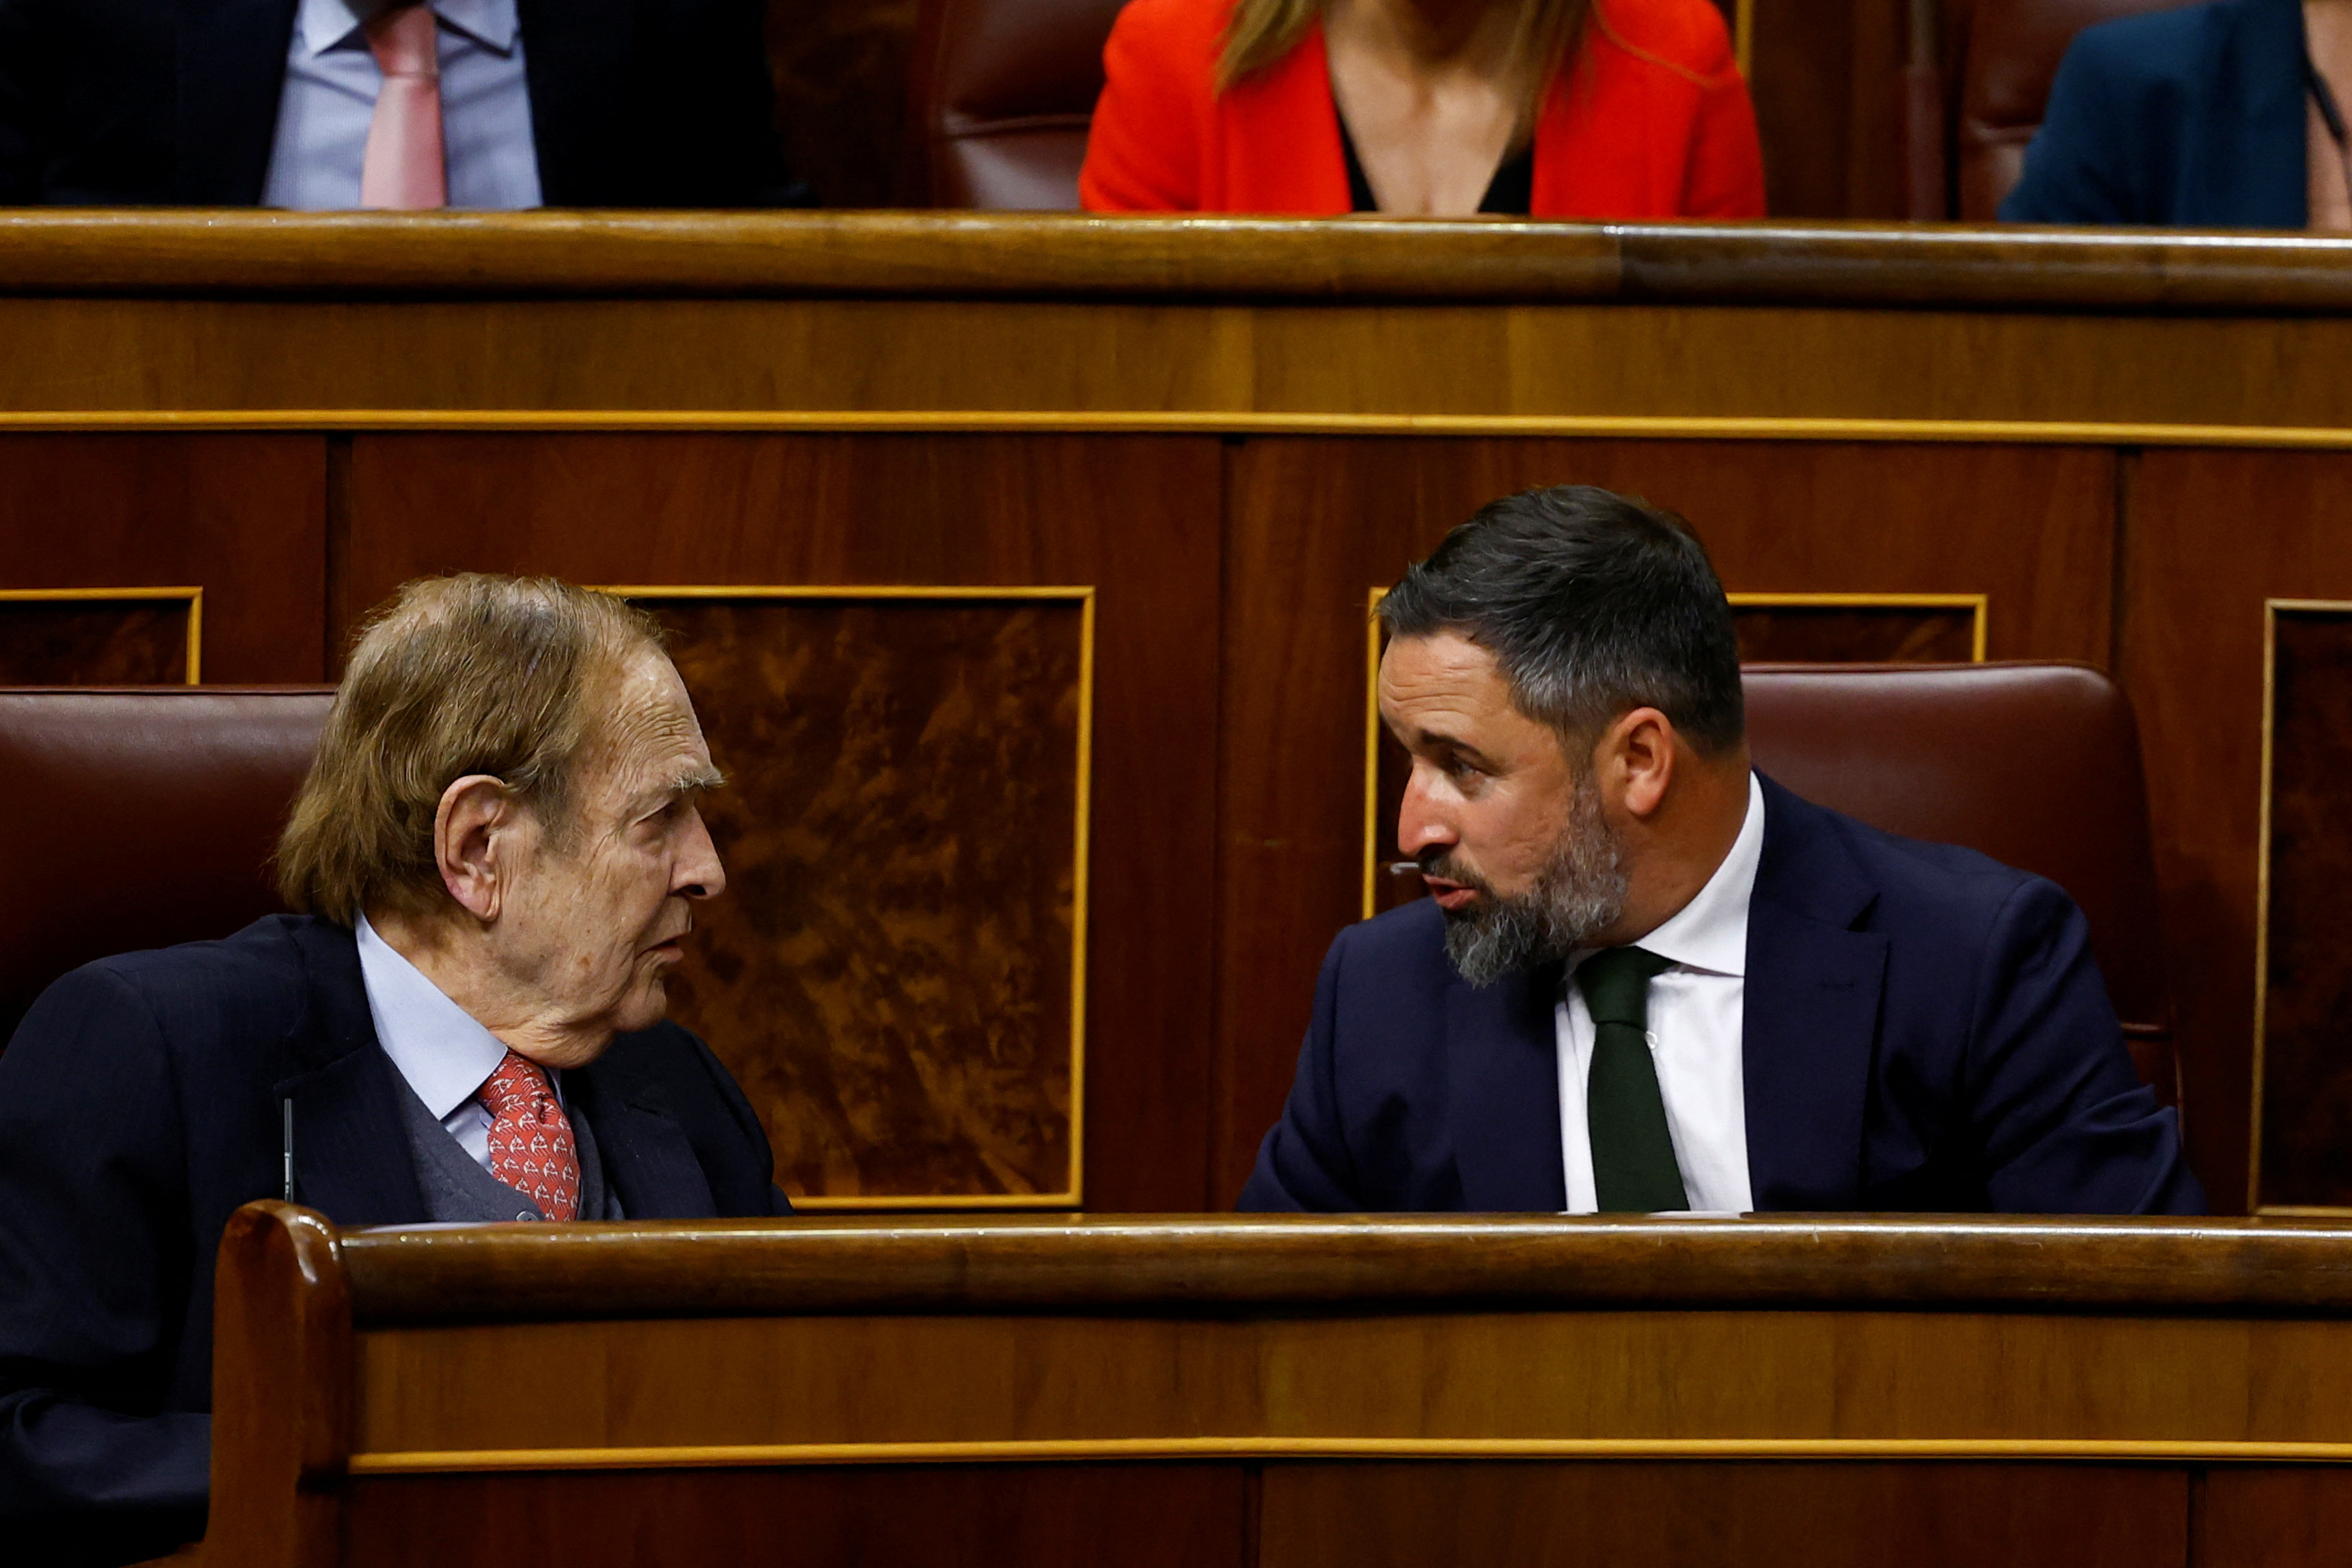 El casi nonagenario candidato, Ramón Tamames, y el líder de ultraderecha Santiago Abascal durante la sesión en el pleno español (Reuters)